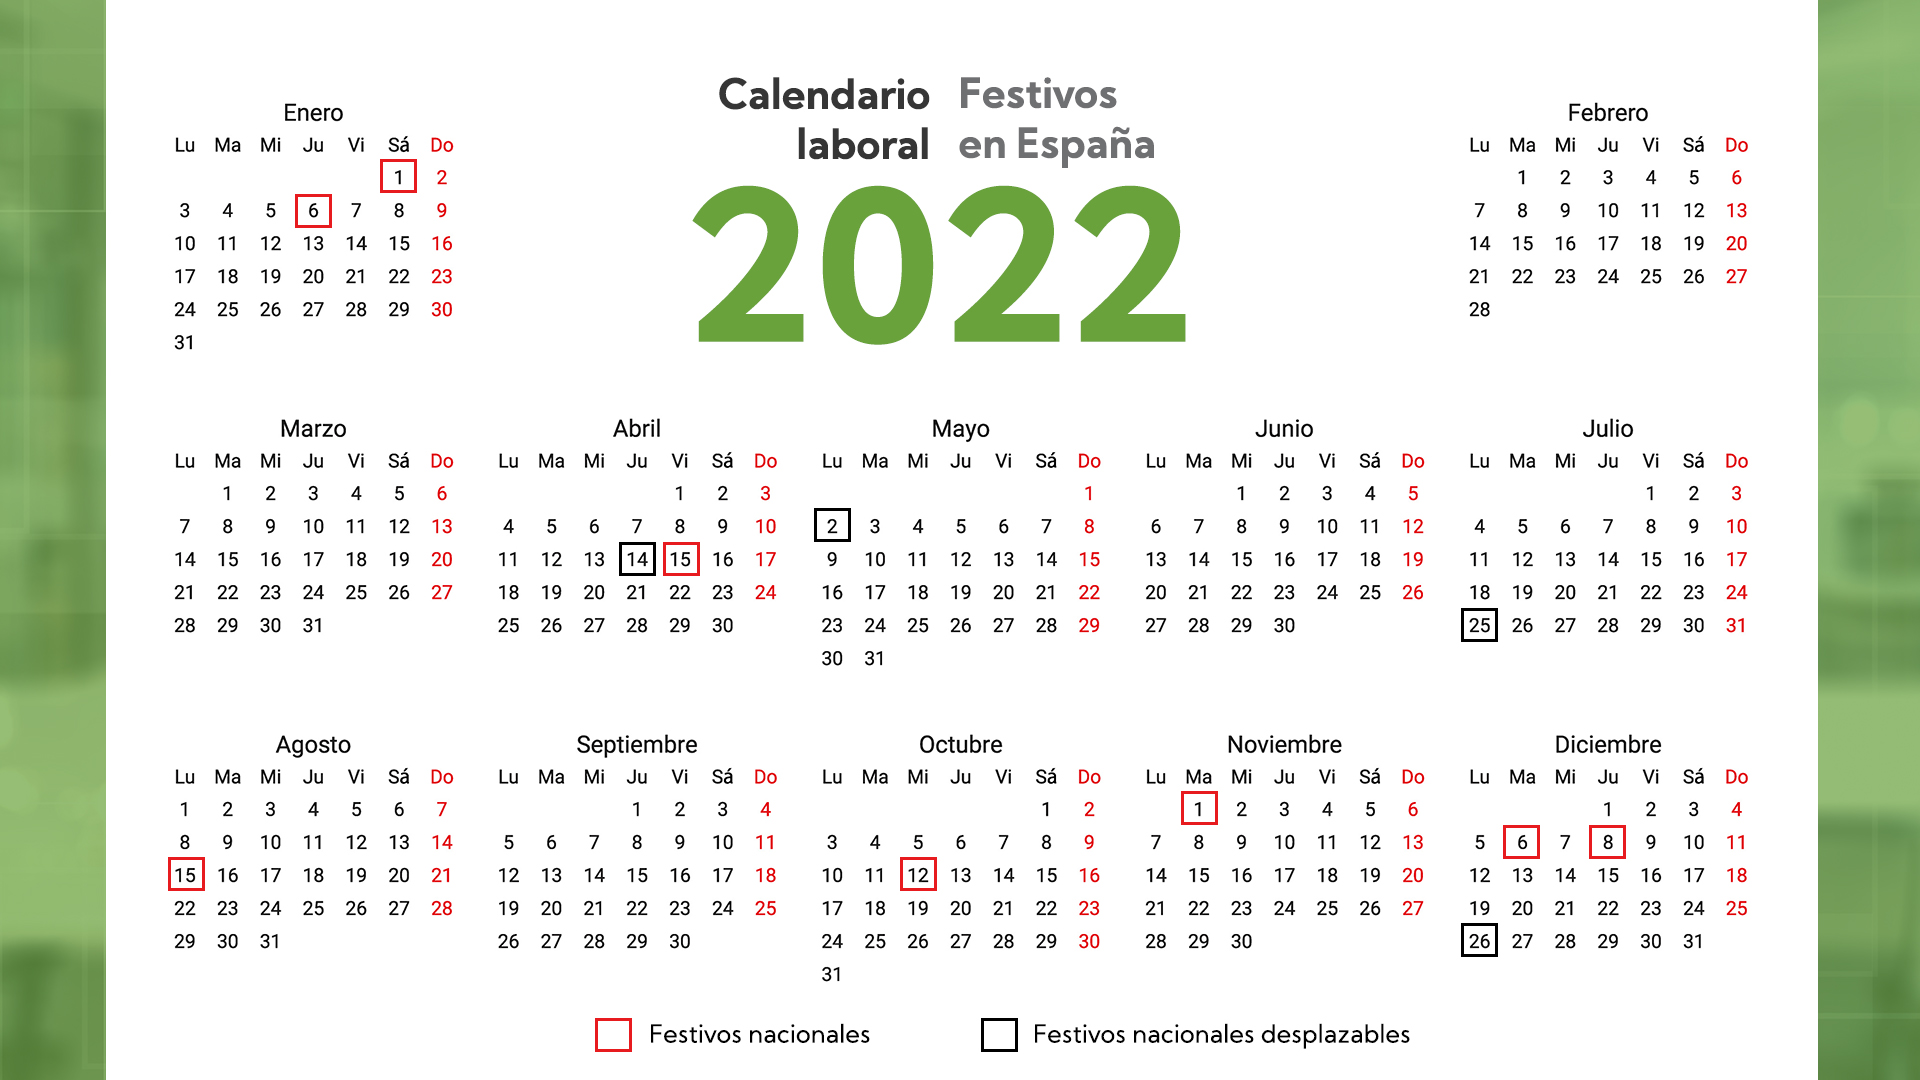 Los 12 días festivos del calendario laboral de 2022 en España